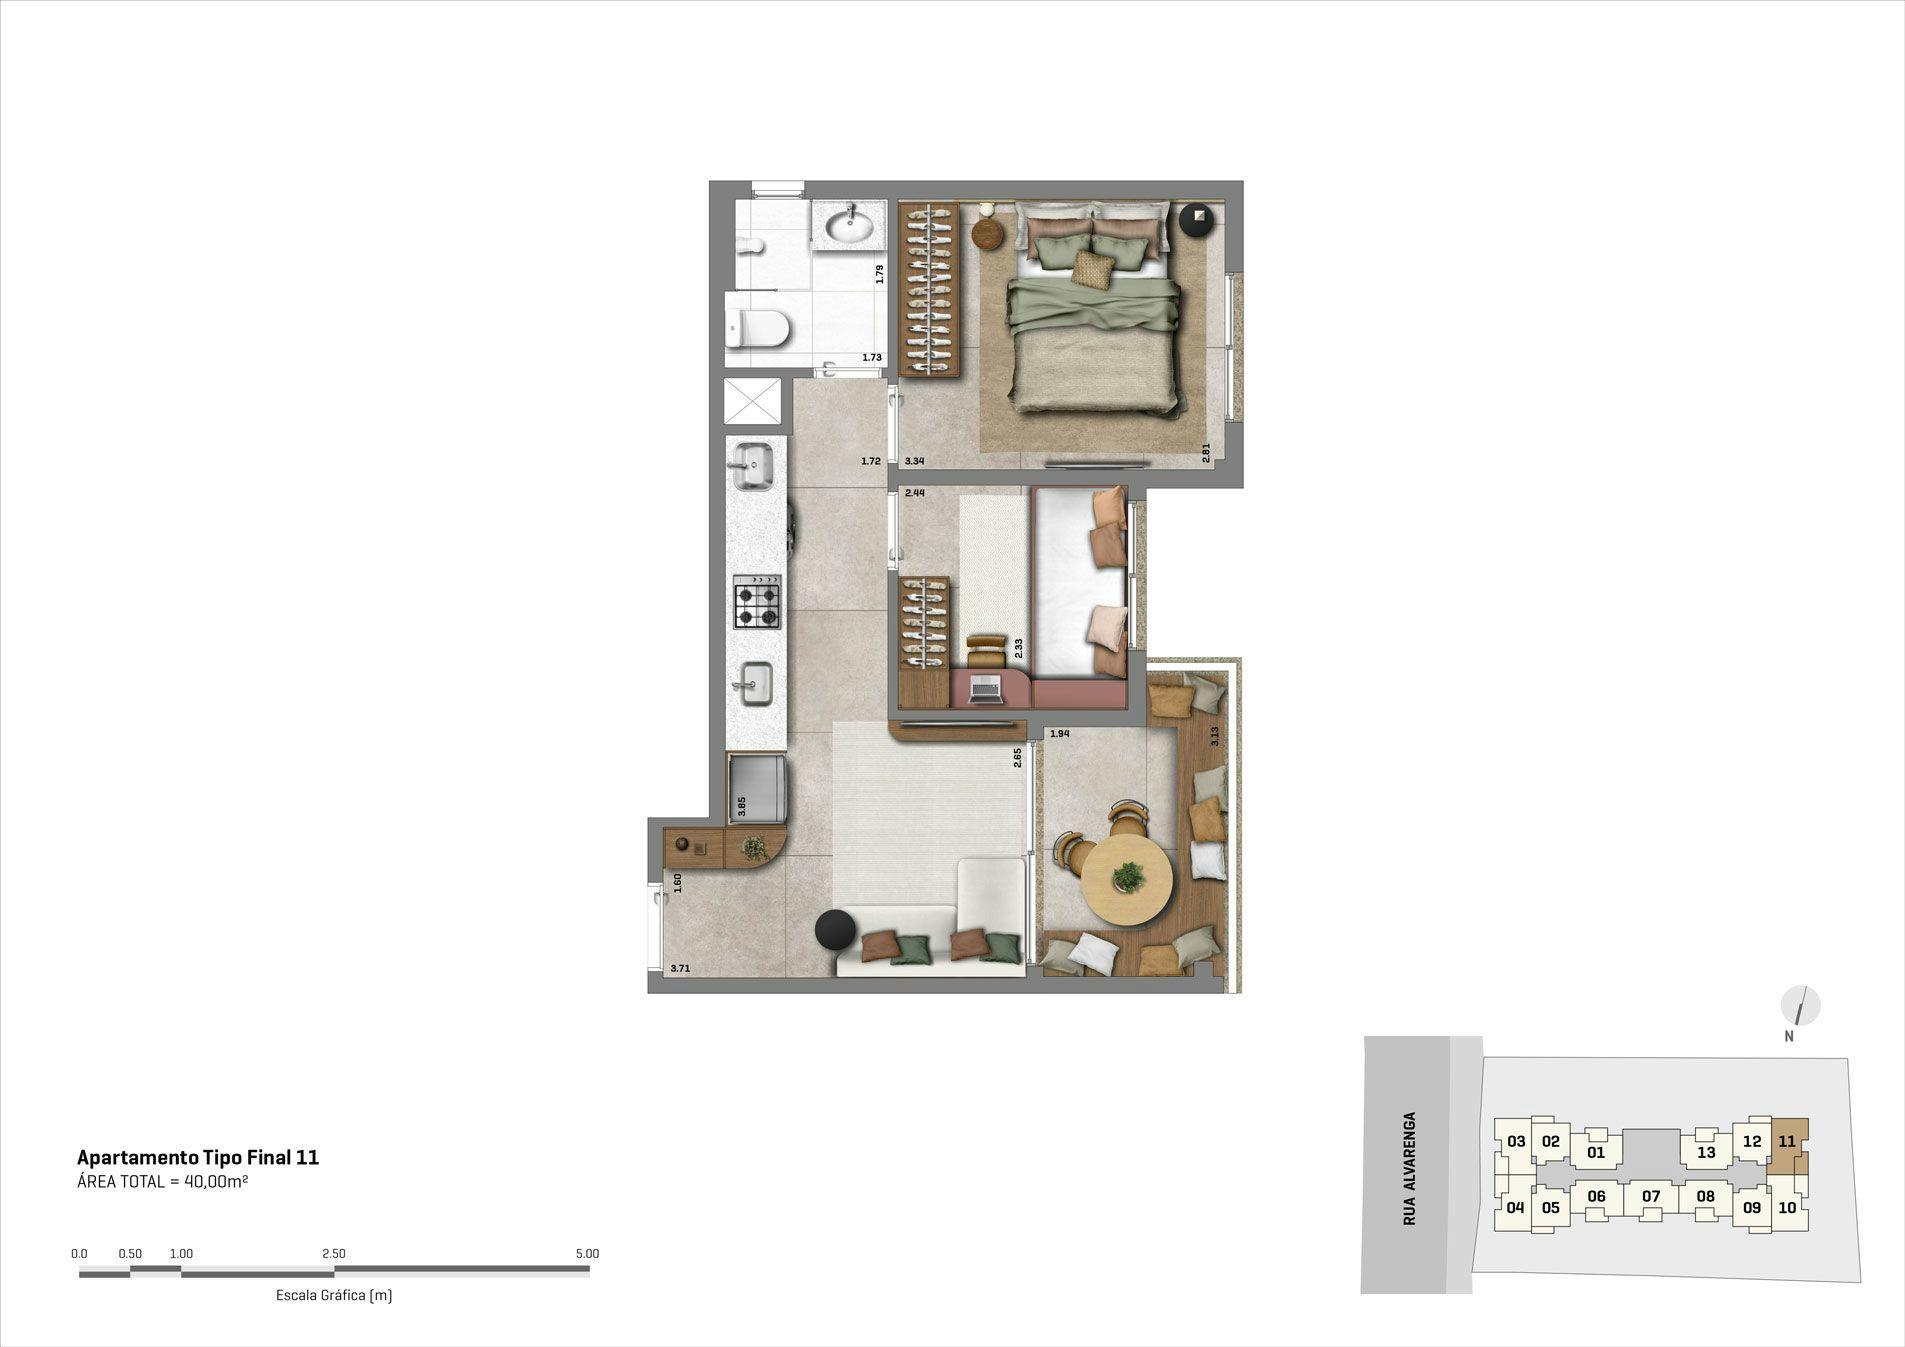 Planta do apartamento de  2 dorms - 40m² - Final 11